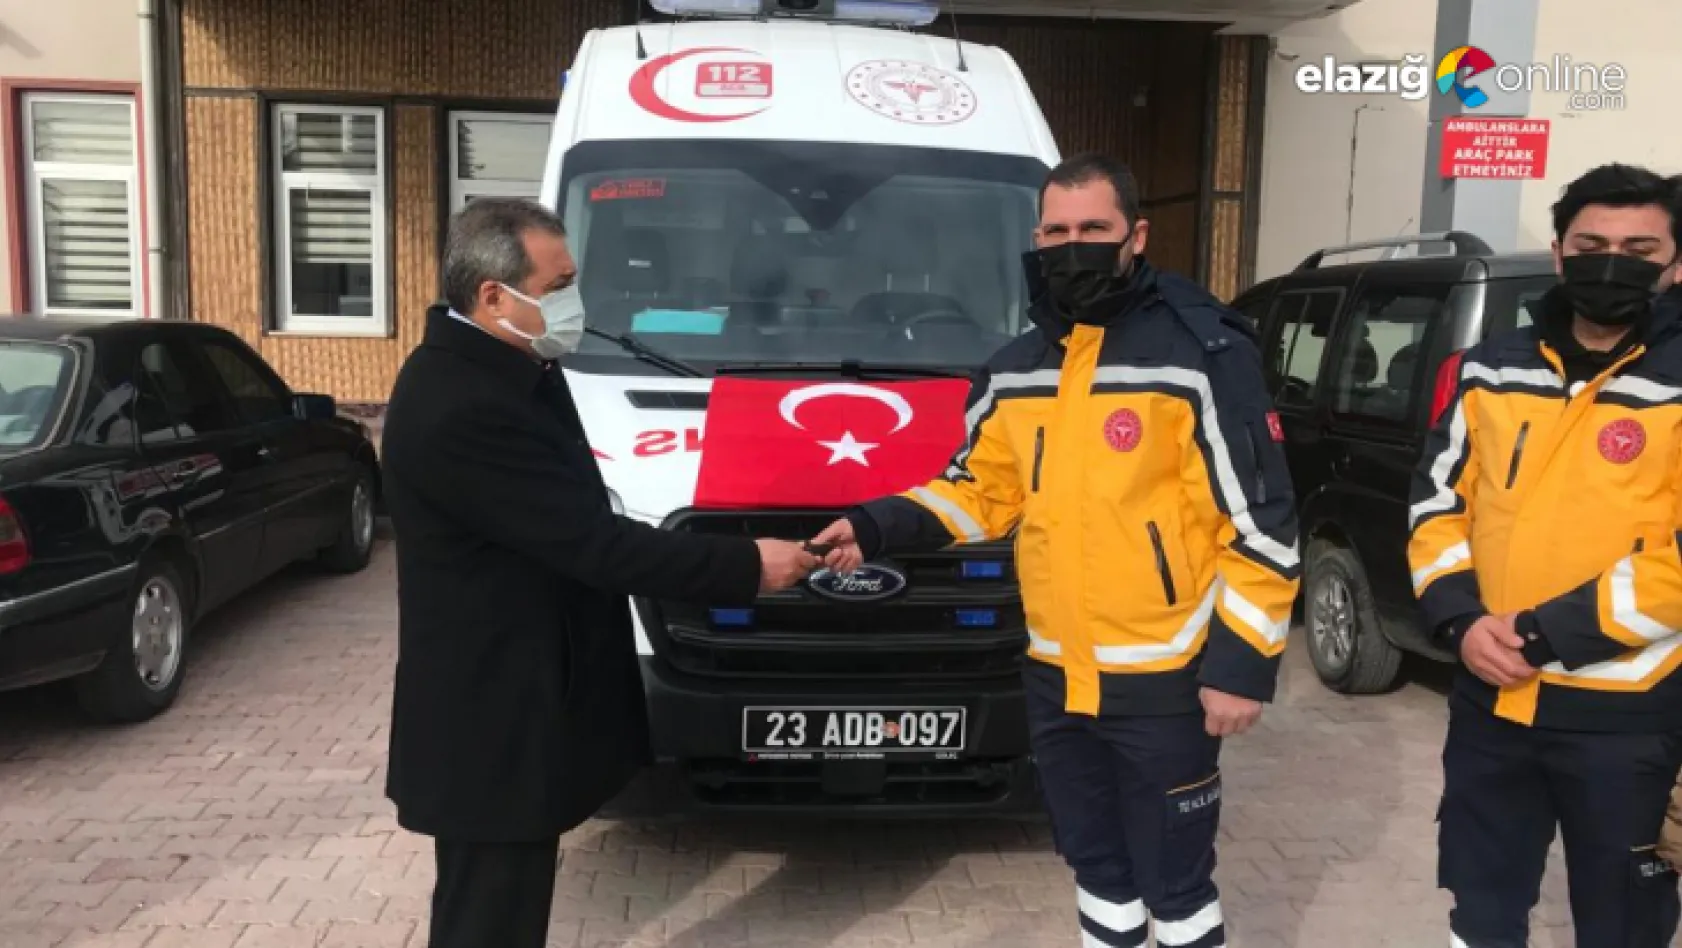 Elazığ'da ambulans sayısı 64'e yükseldi